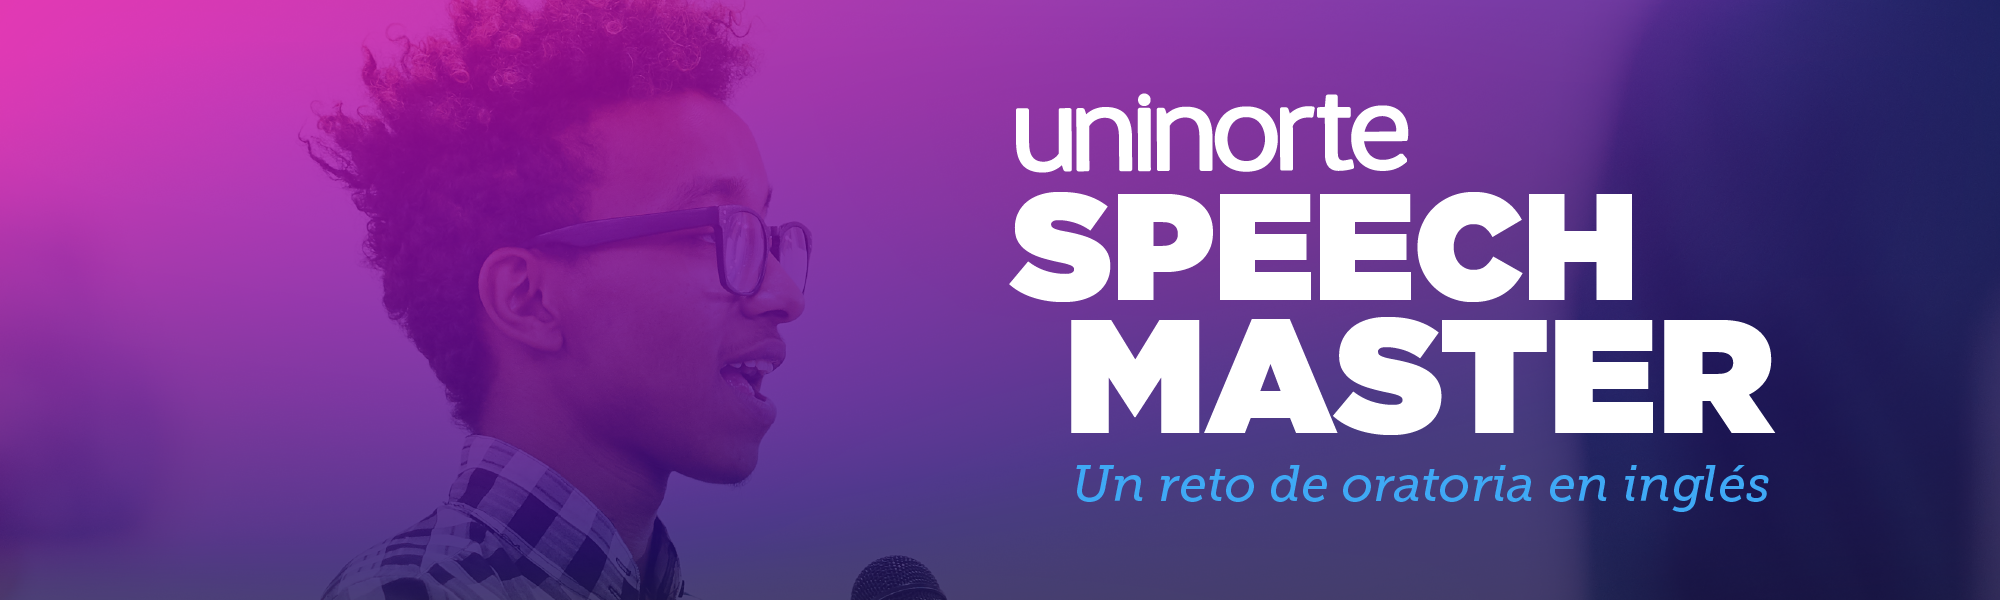 Uninorte speech master